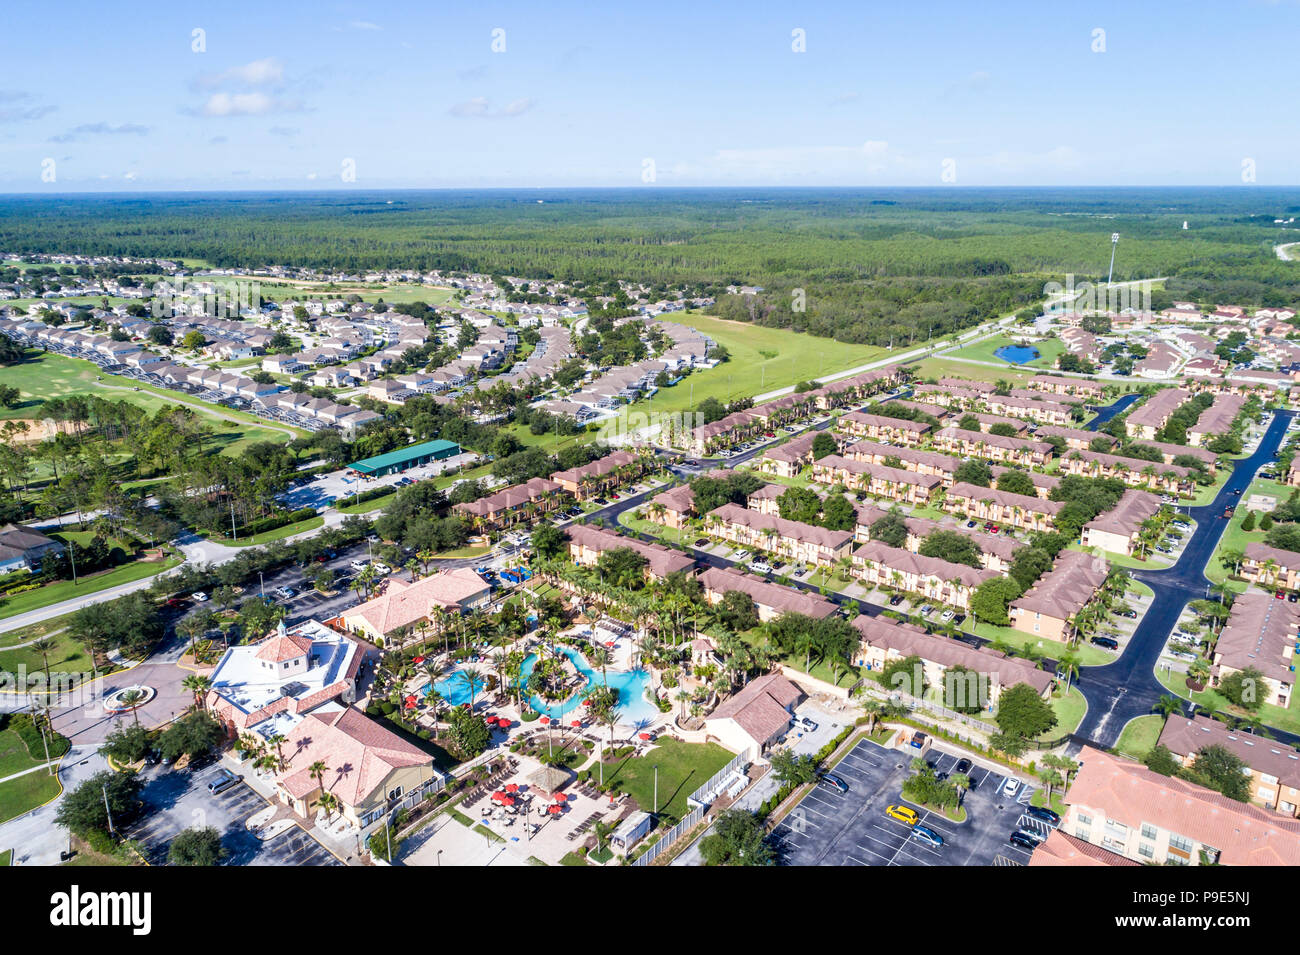 Orlando Florida, Davenport, Welcome Homes USA Regal Palms Resort Bella Piazza Resort, Highlands Reserve, Wohngegend, Luftaufnahme von oben, FL1 Stockfoto